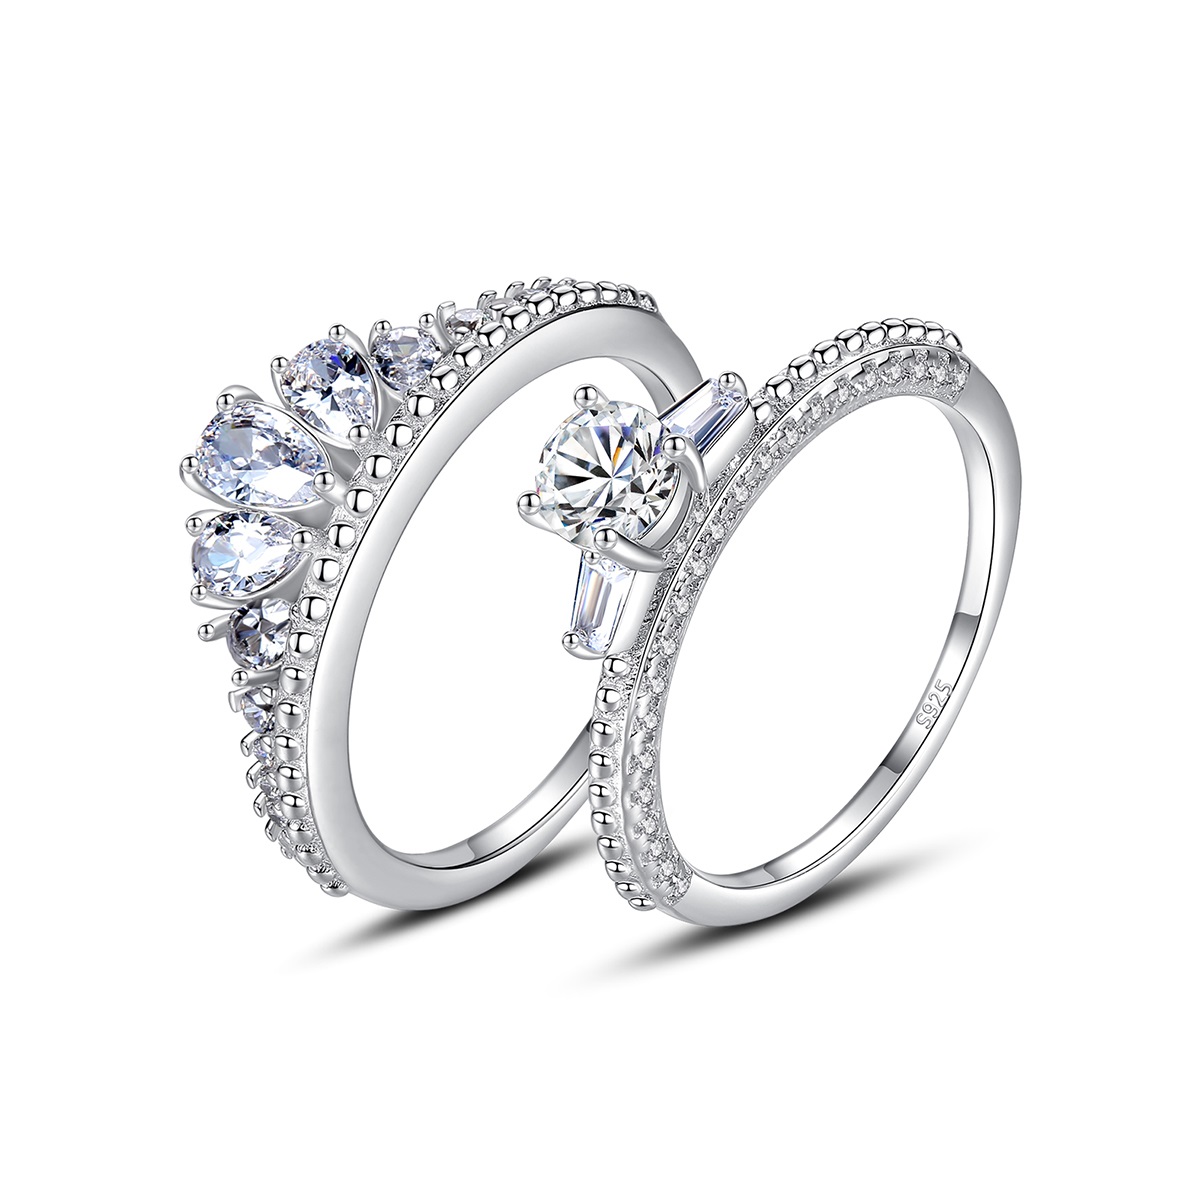 E-shop Linda's Jewelry Strieborný dvojitý prsteň Tiara Ag 925/1000 IPR095-9-5